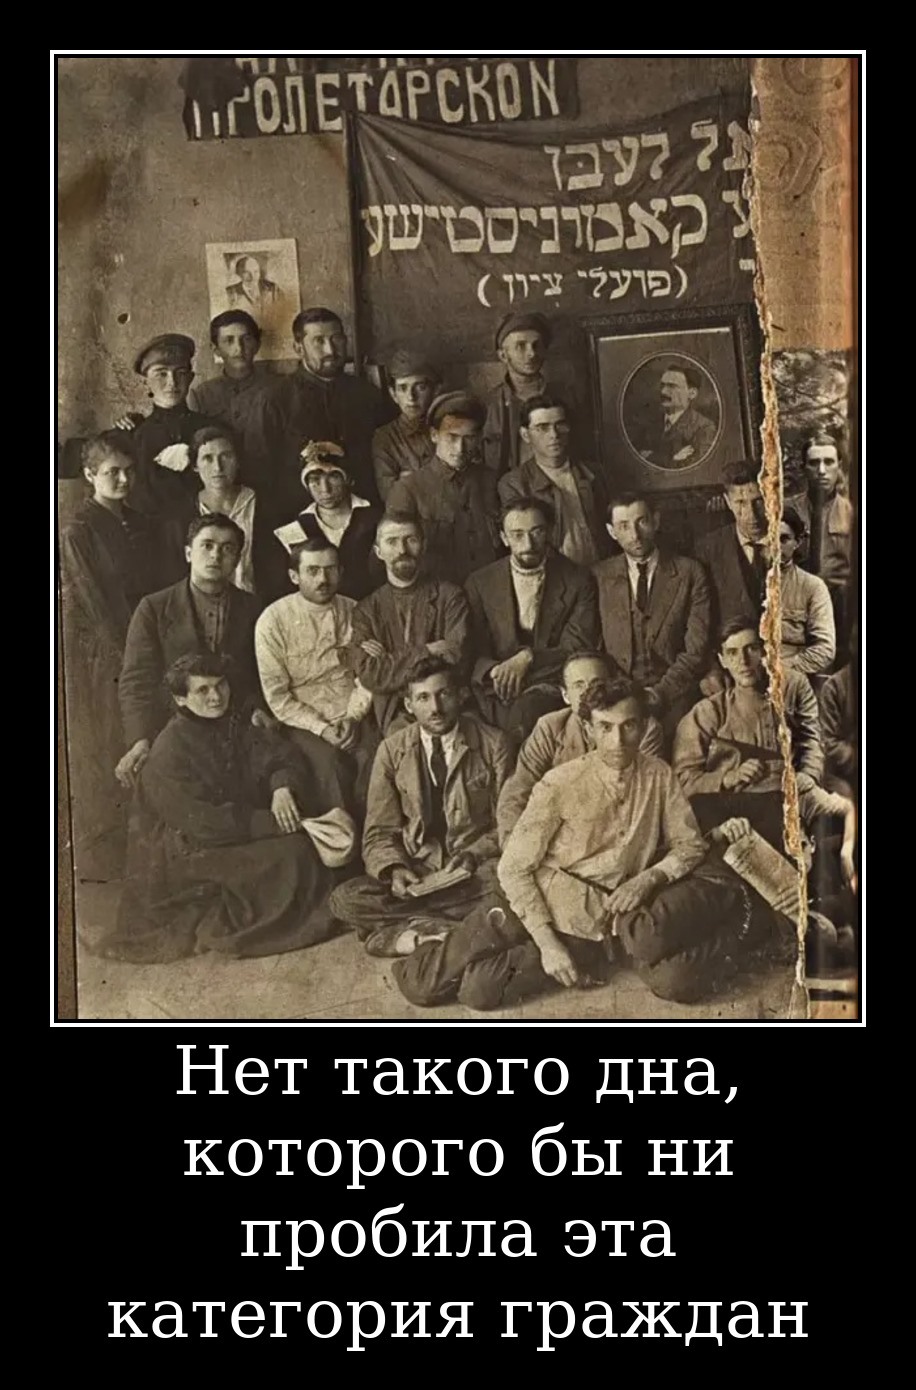 Бунд партия. Еврейские революционеры 1917. Еврейская революция 1917. Евреи большевики. Евреи в революции 1917.